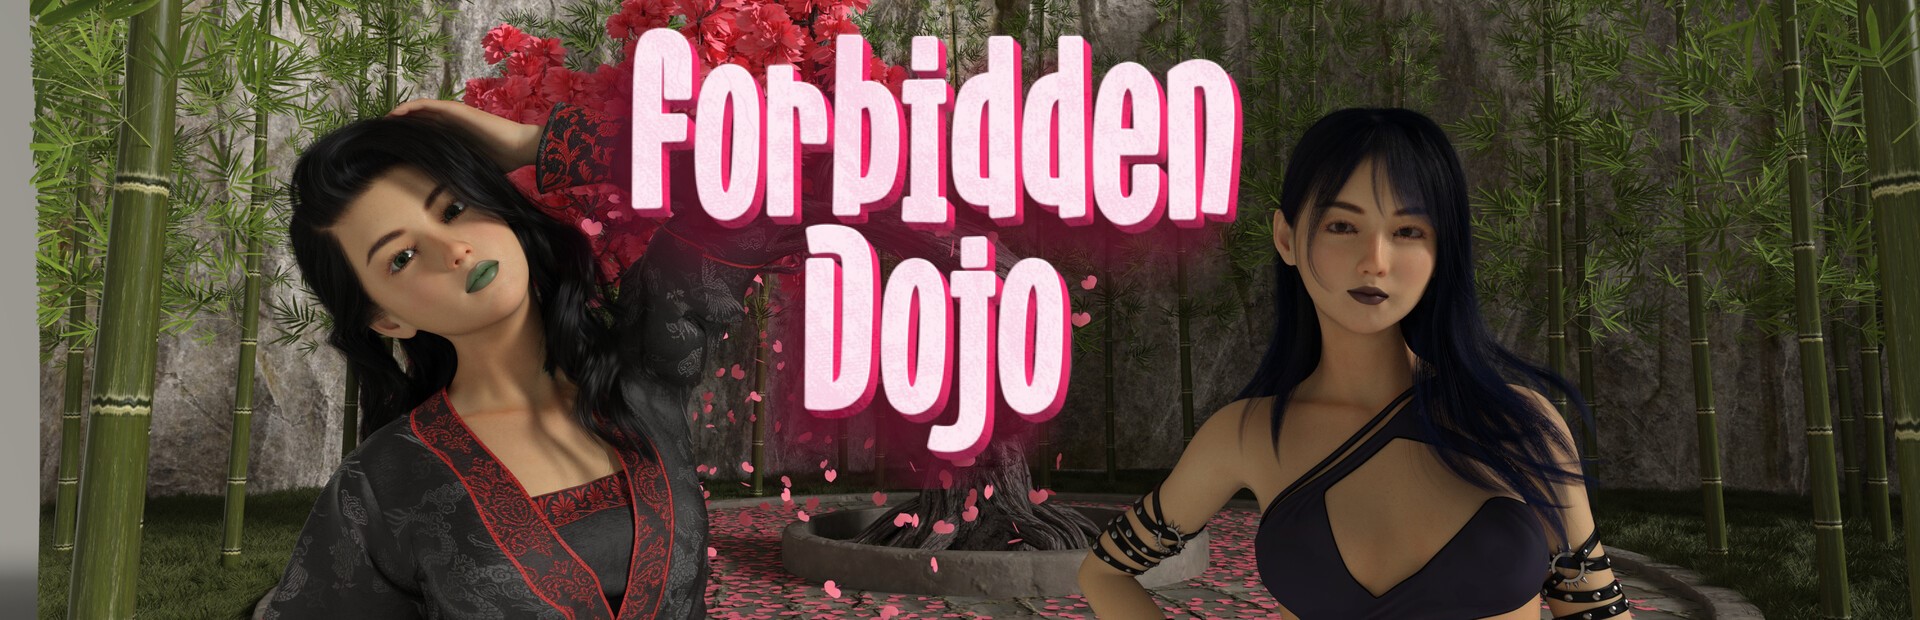 Forbidden Dojo1.jpeg